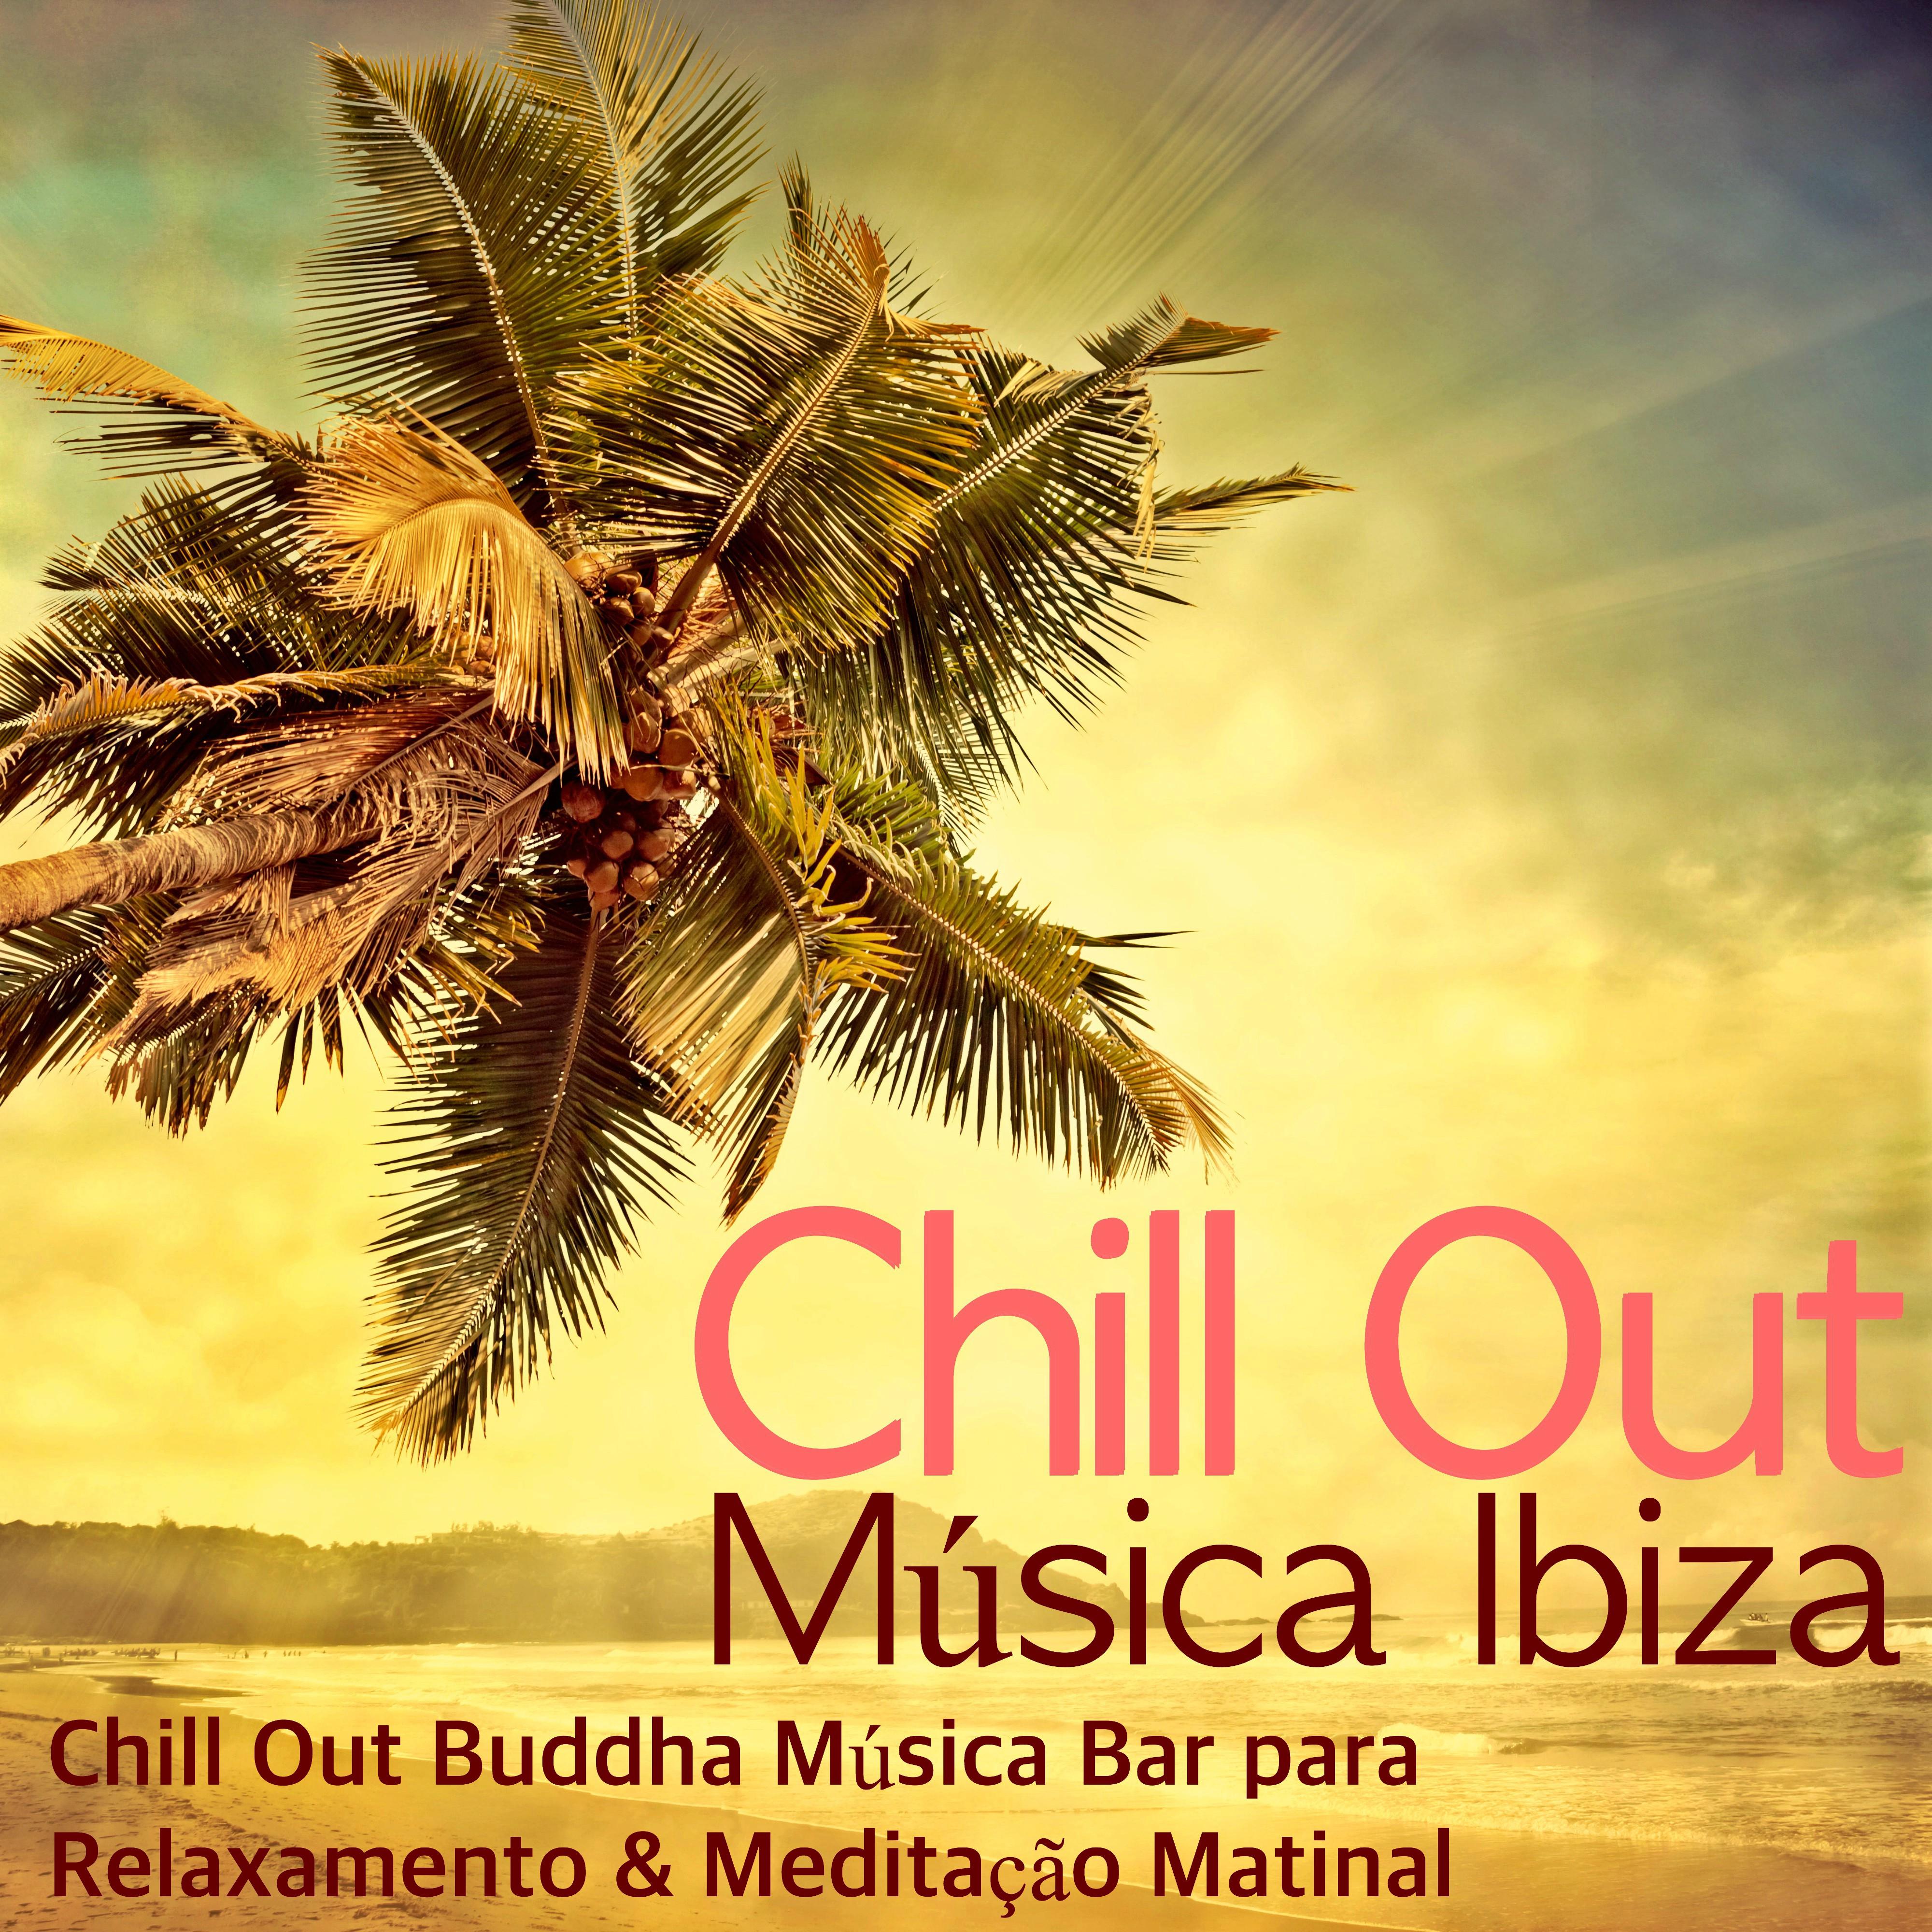 Chill Out Música Ibiza - Chill Out Buddha Música Bar para Relaxamento & Meditação Matinal